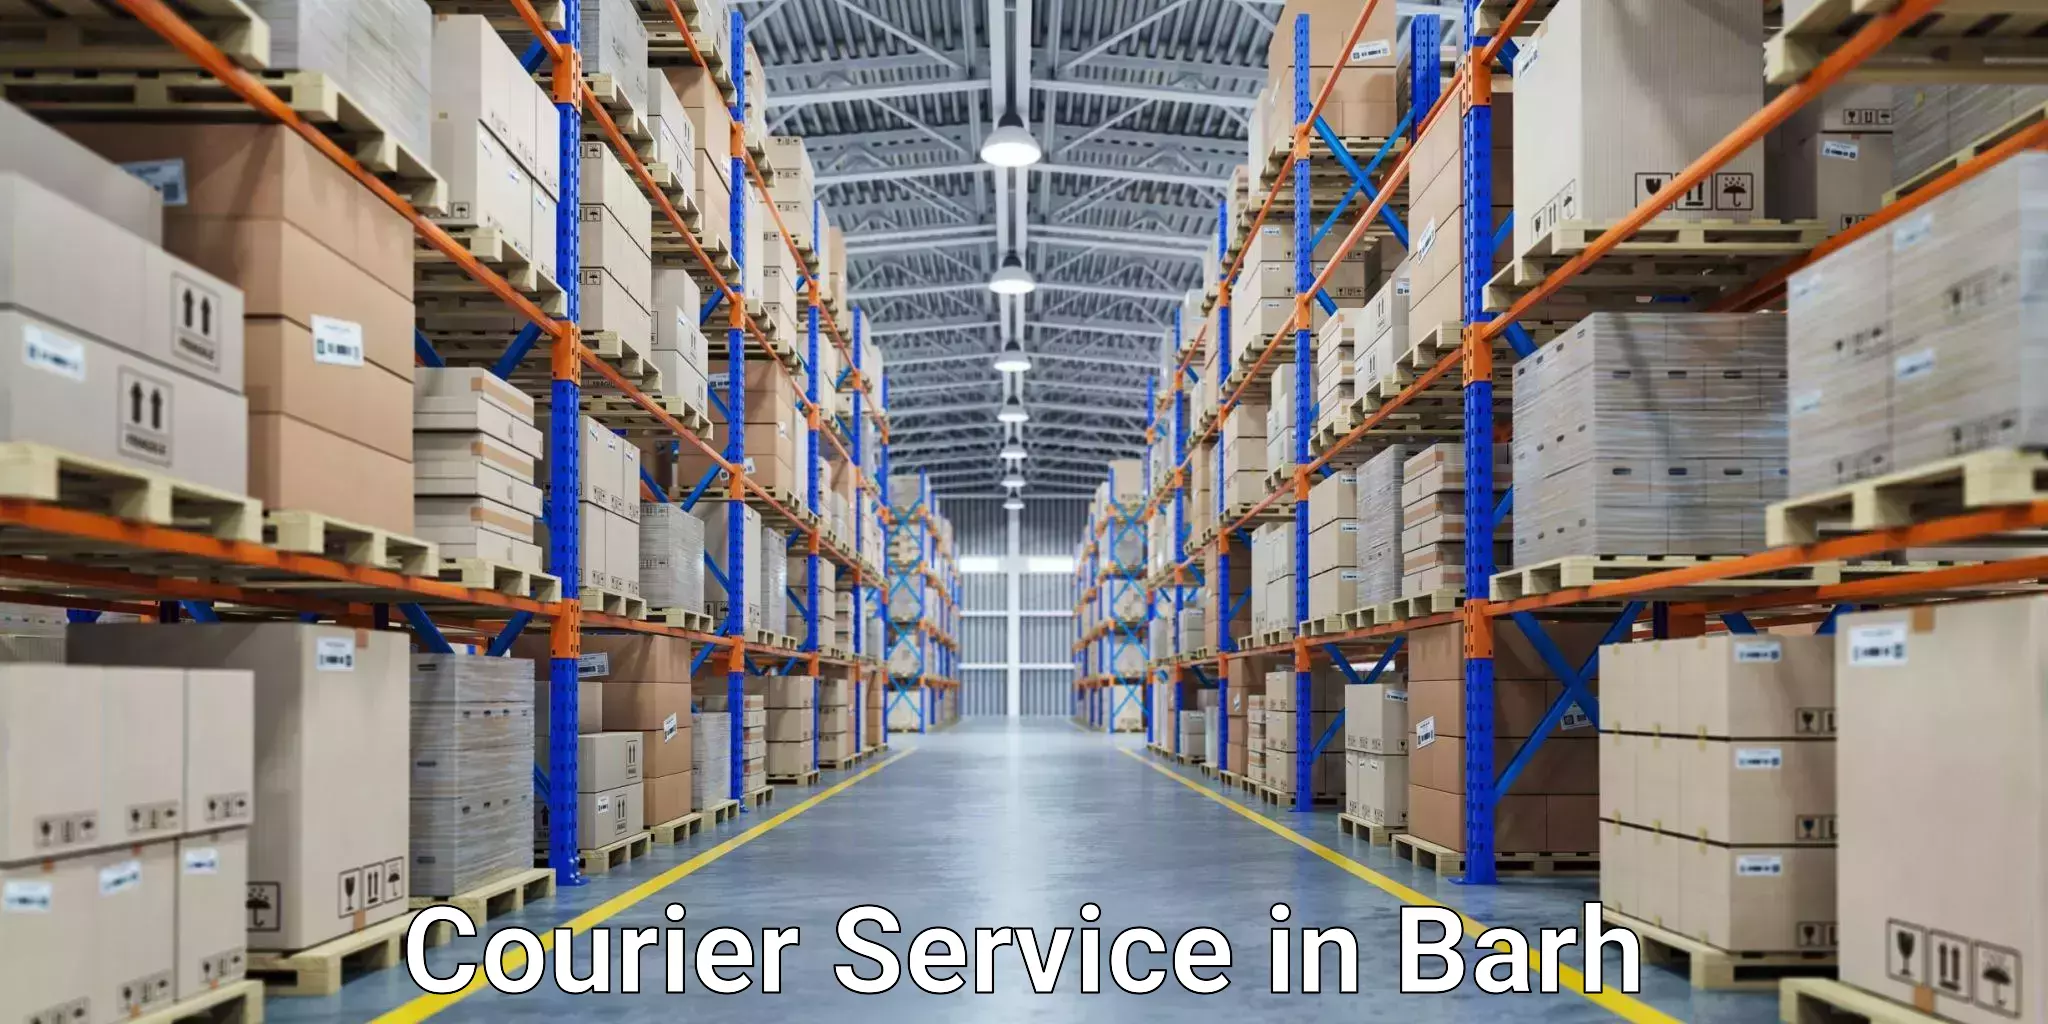 International parcel service in Barh